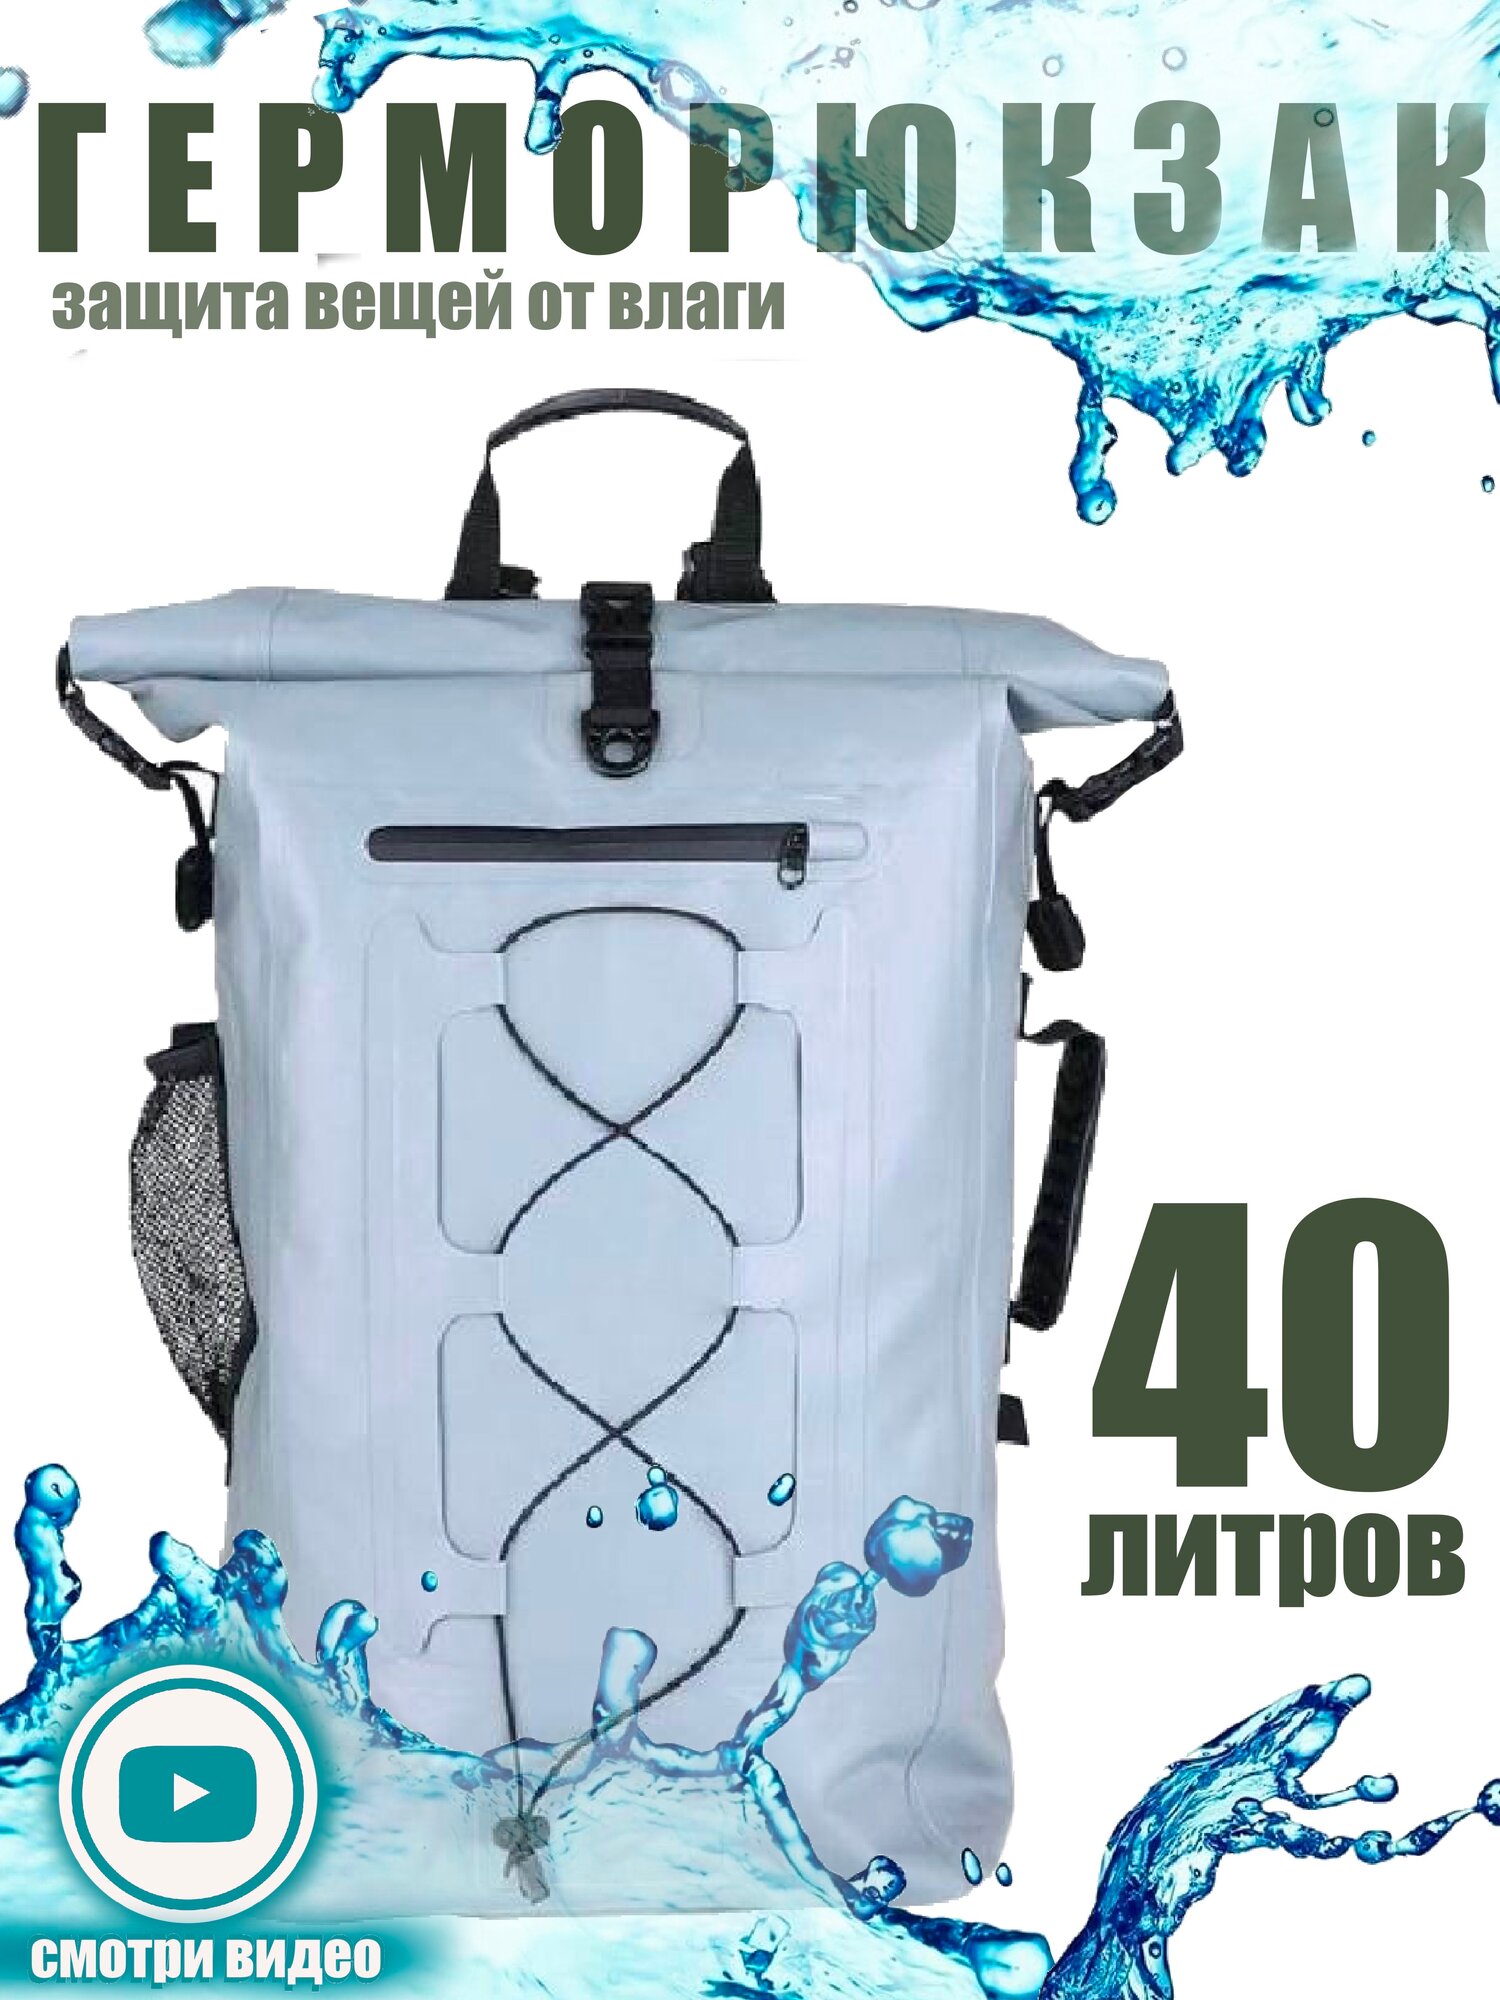 Водонепроницаемый рюкзак из ПВХ туристический "Maikе" 40 литров, цвет летний черный (серый), мужской / женский герморюкзак, гермомешок